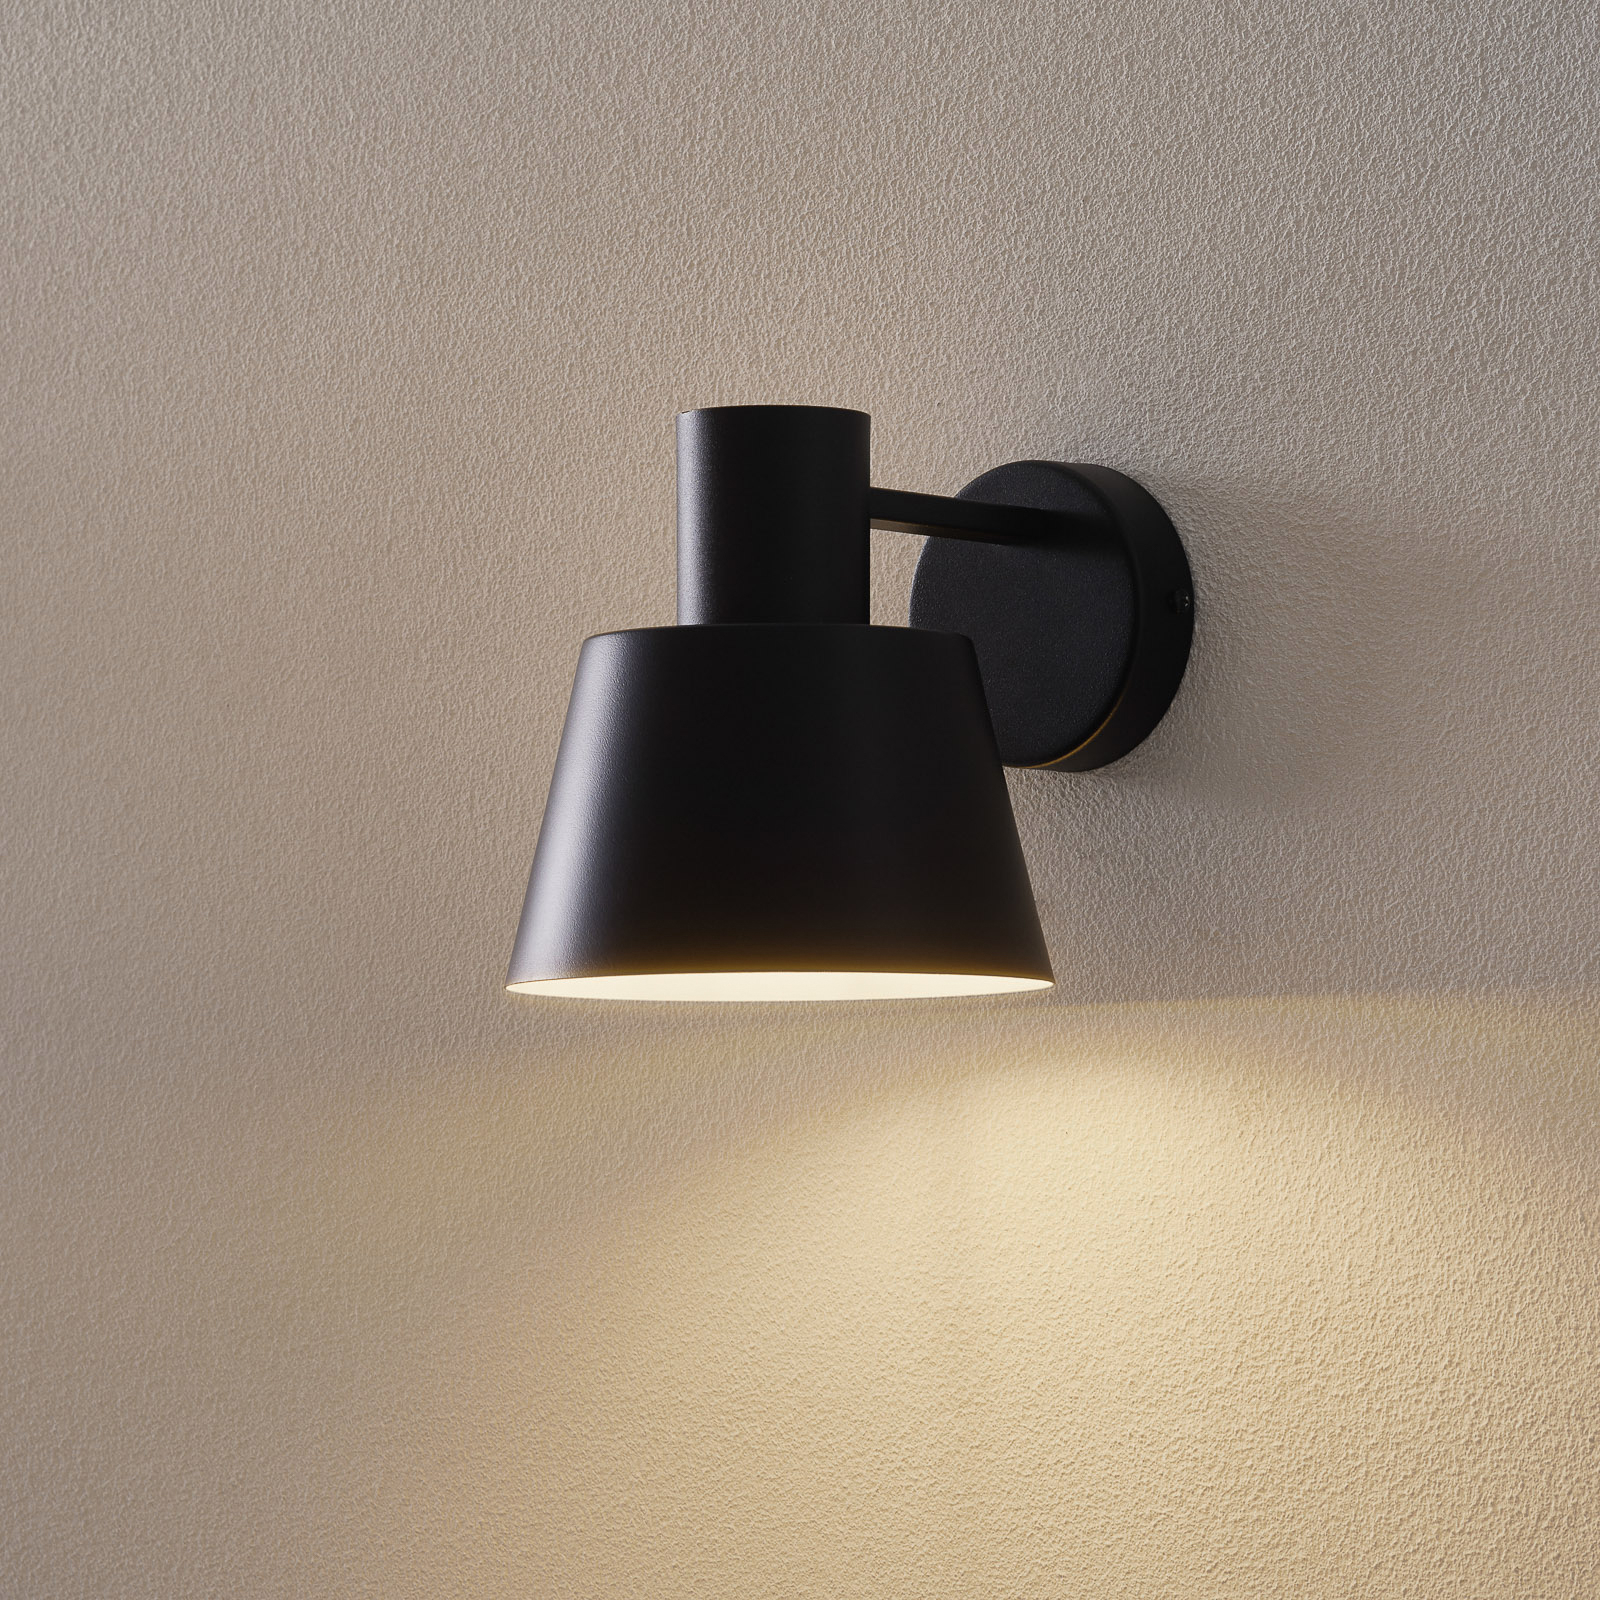 Vägglampa Dunka av metall, 1 lampa, svart